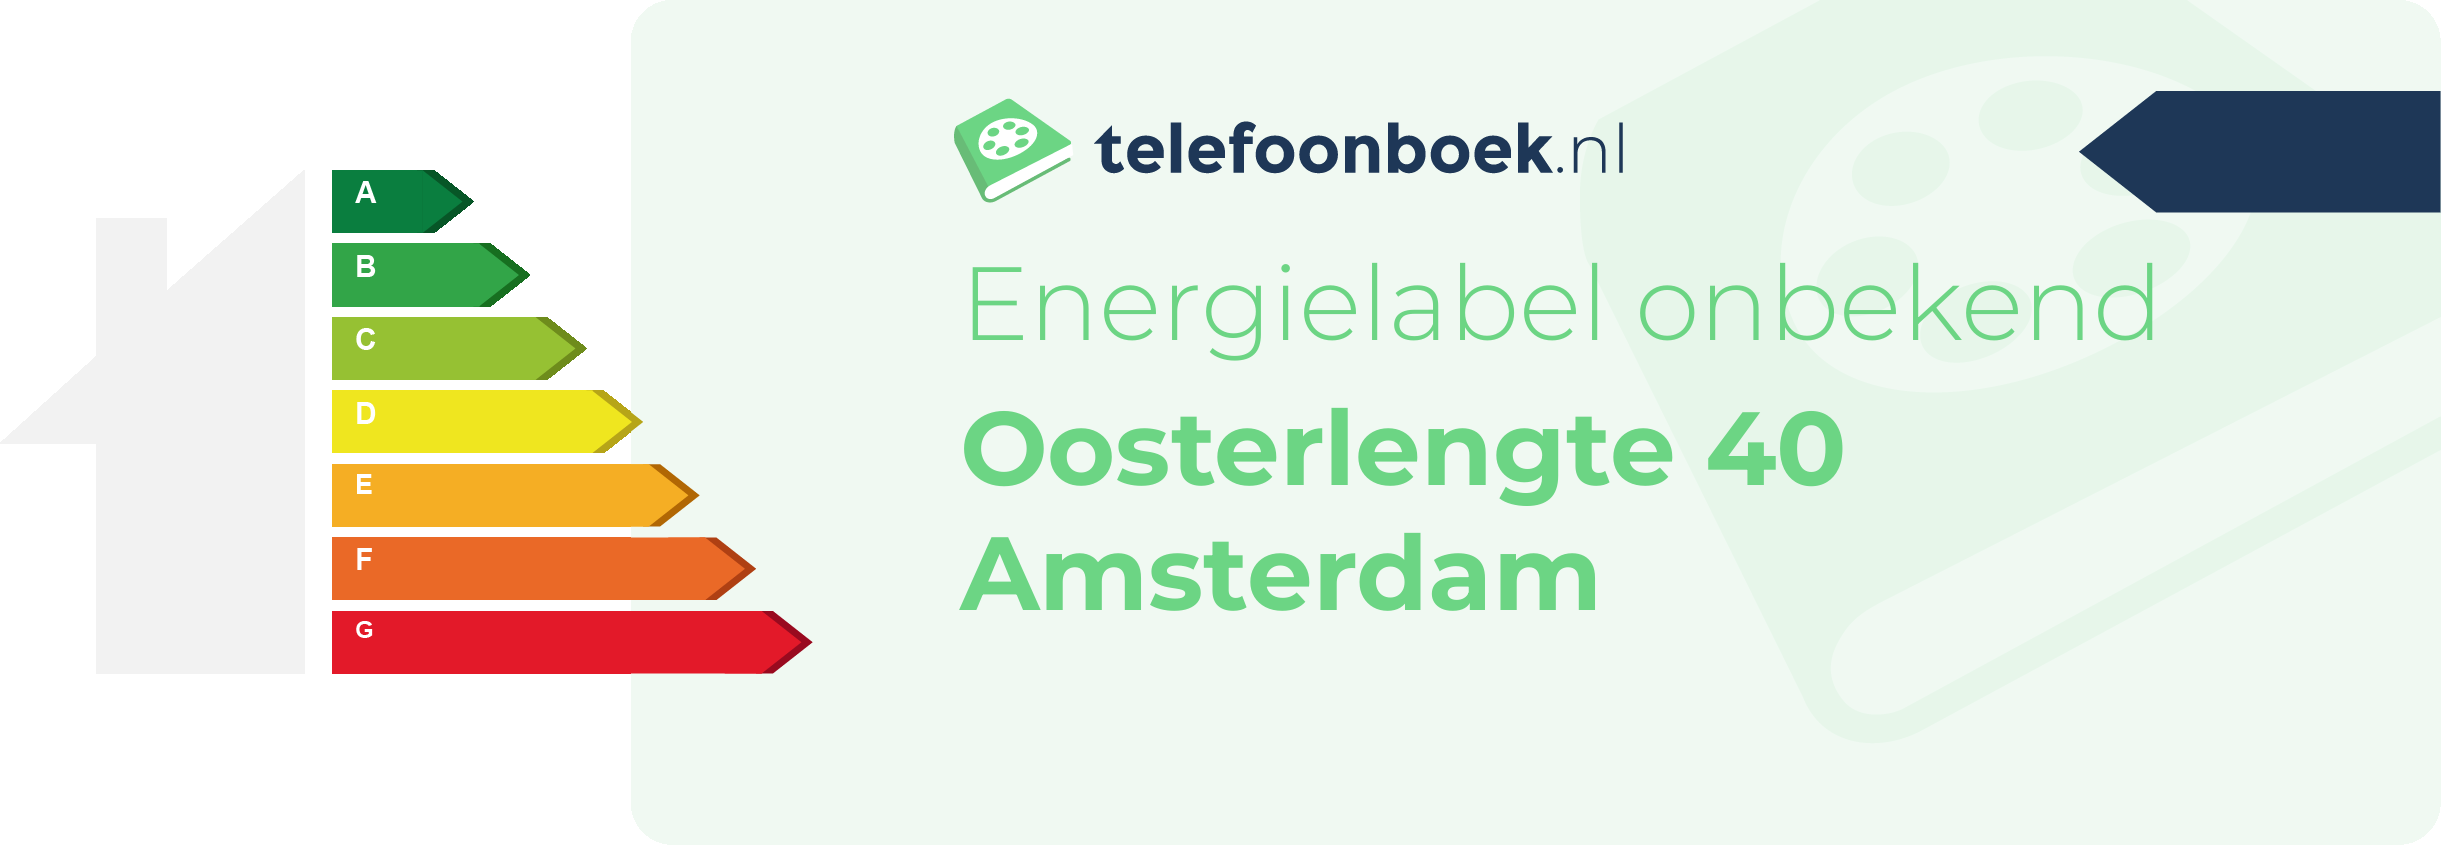 Energielabel Oosterlengte 40 Amsterdam